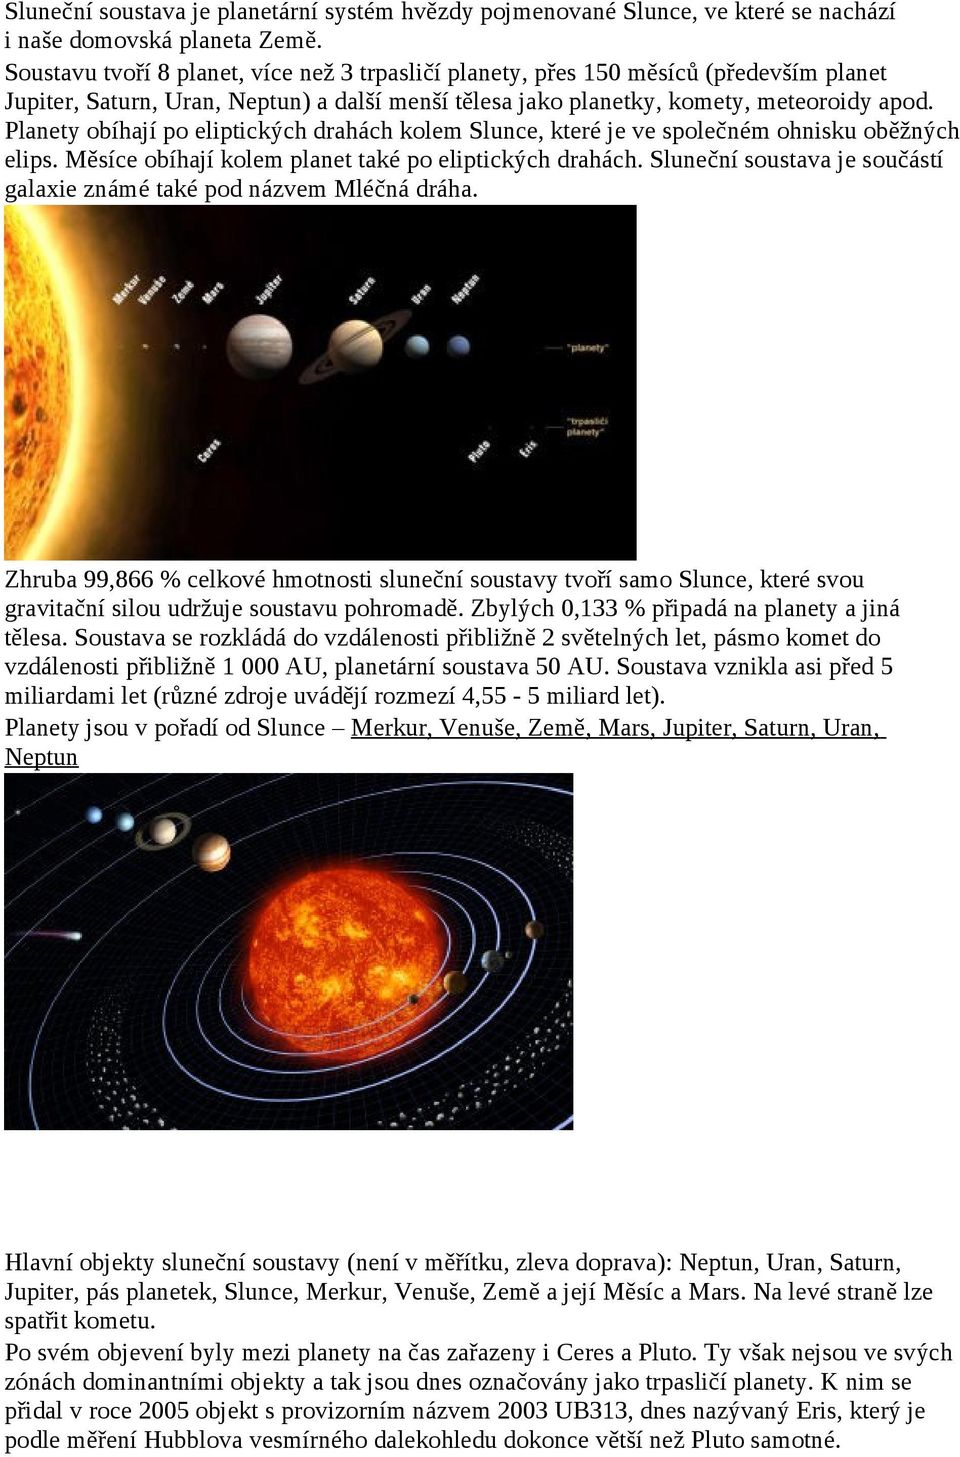 Planety obíhají po eliptických drahách kolem Slunce, které je ve společném ohnisku oběžných elips. Měsíce obíhají kolem planet také po eliptických drahách.